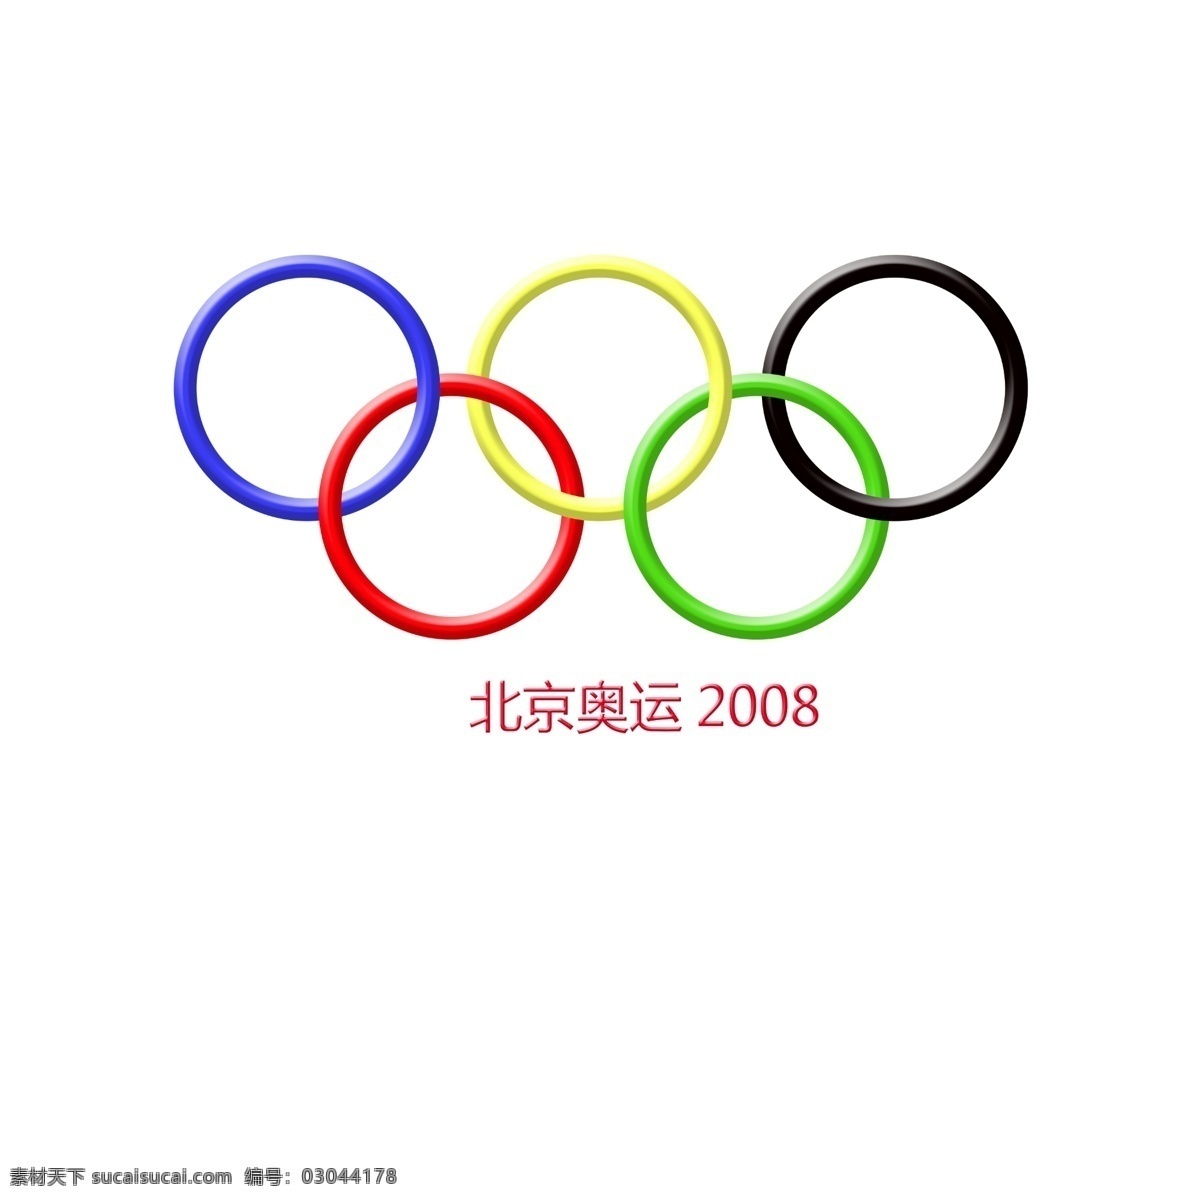 北京 奥运会 北京奥运 奥运2008 ps素材 奥运素材 五环素材 奥运五环 五环图片 运动 运动素材 ps 平面设计 平面素材 平面设计素材 文化艺术 体育运动